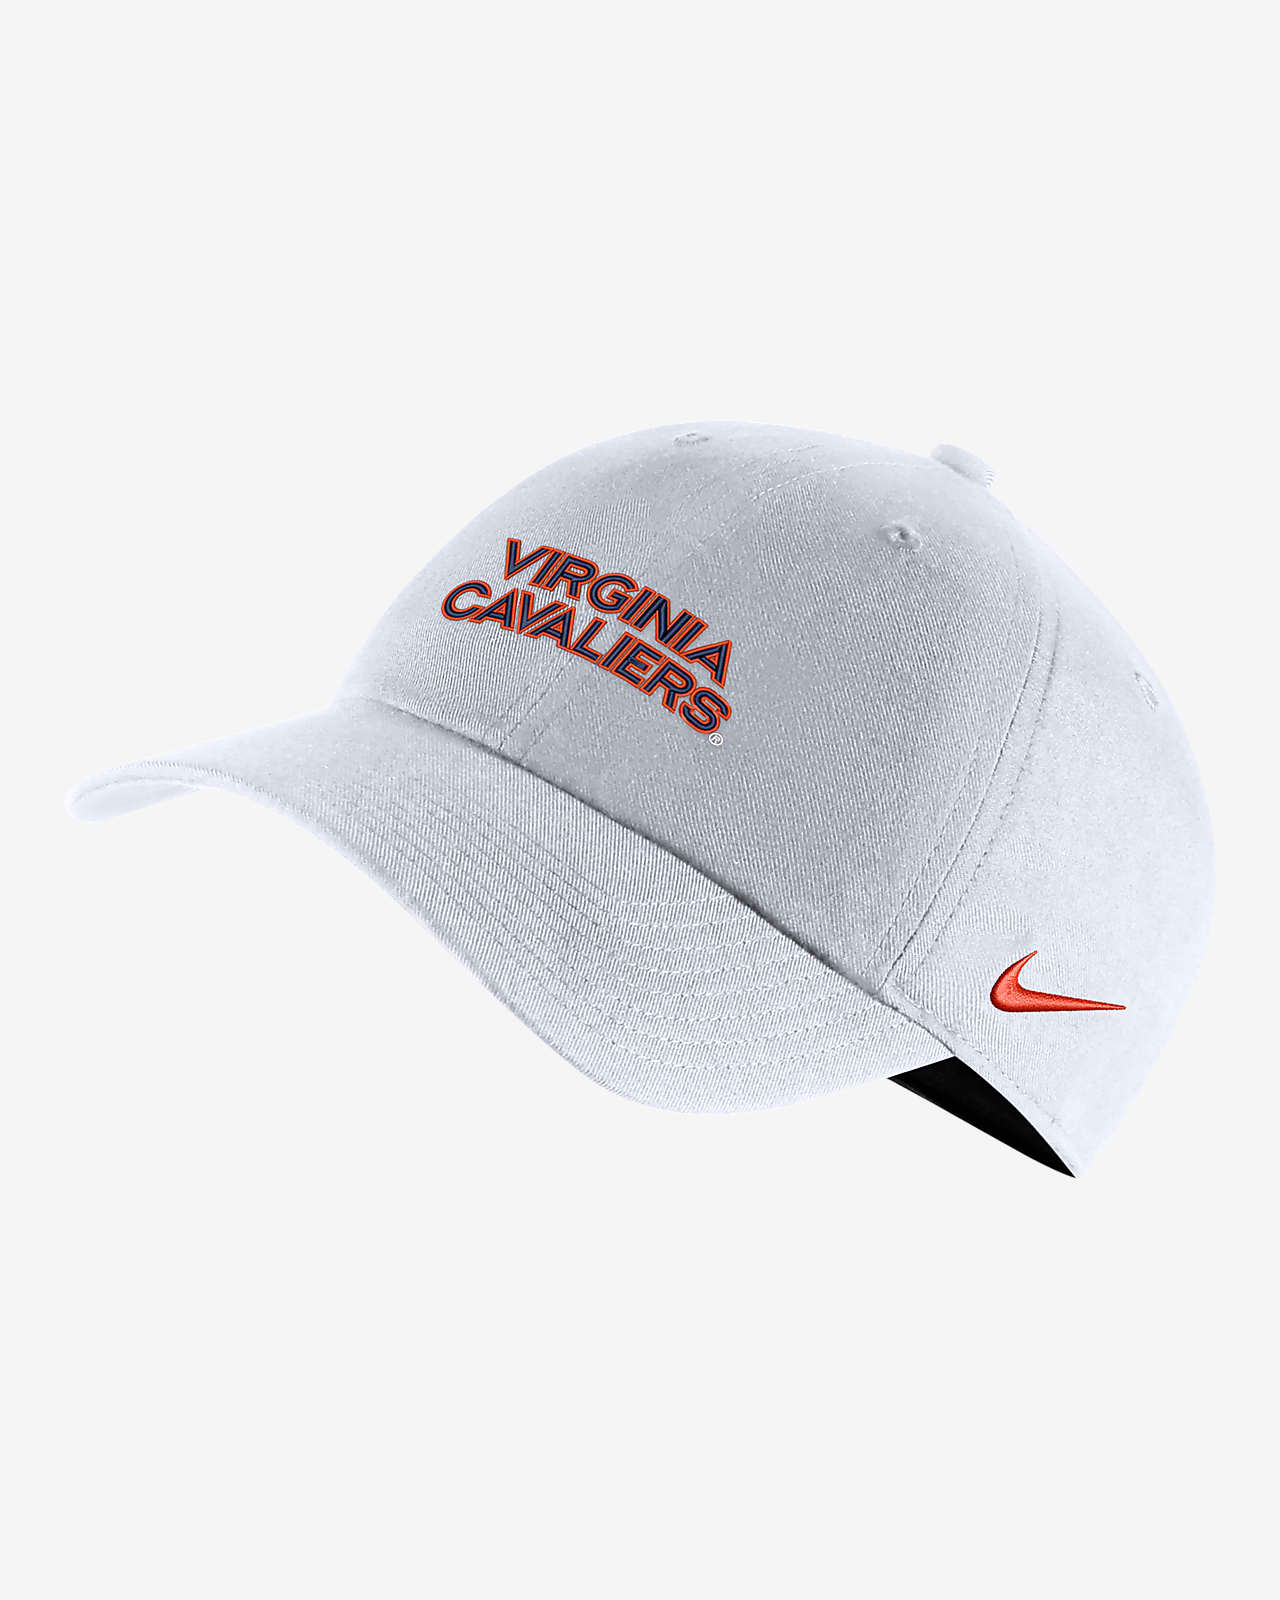 Virginia Nike College Cap